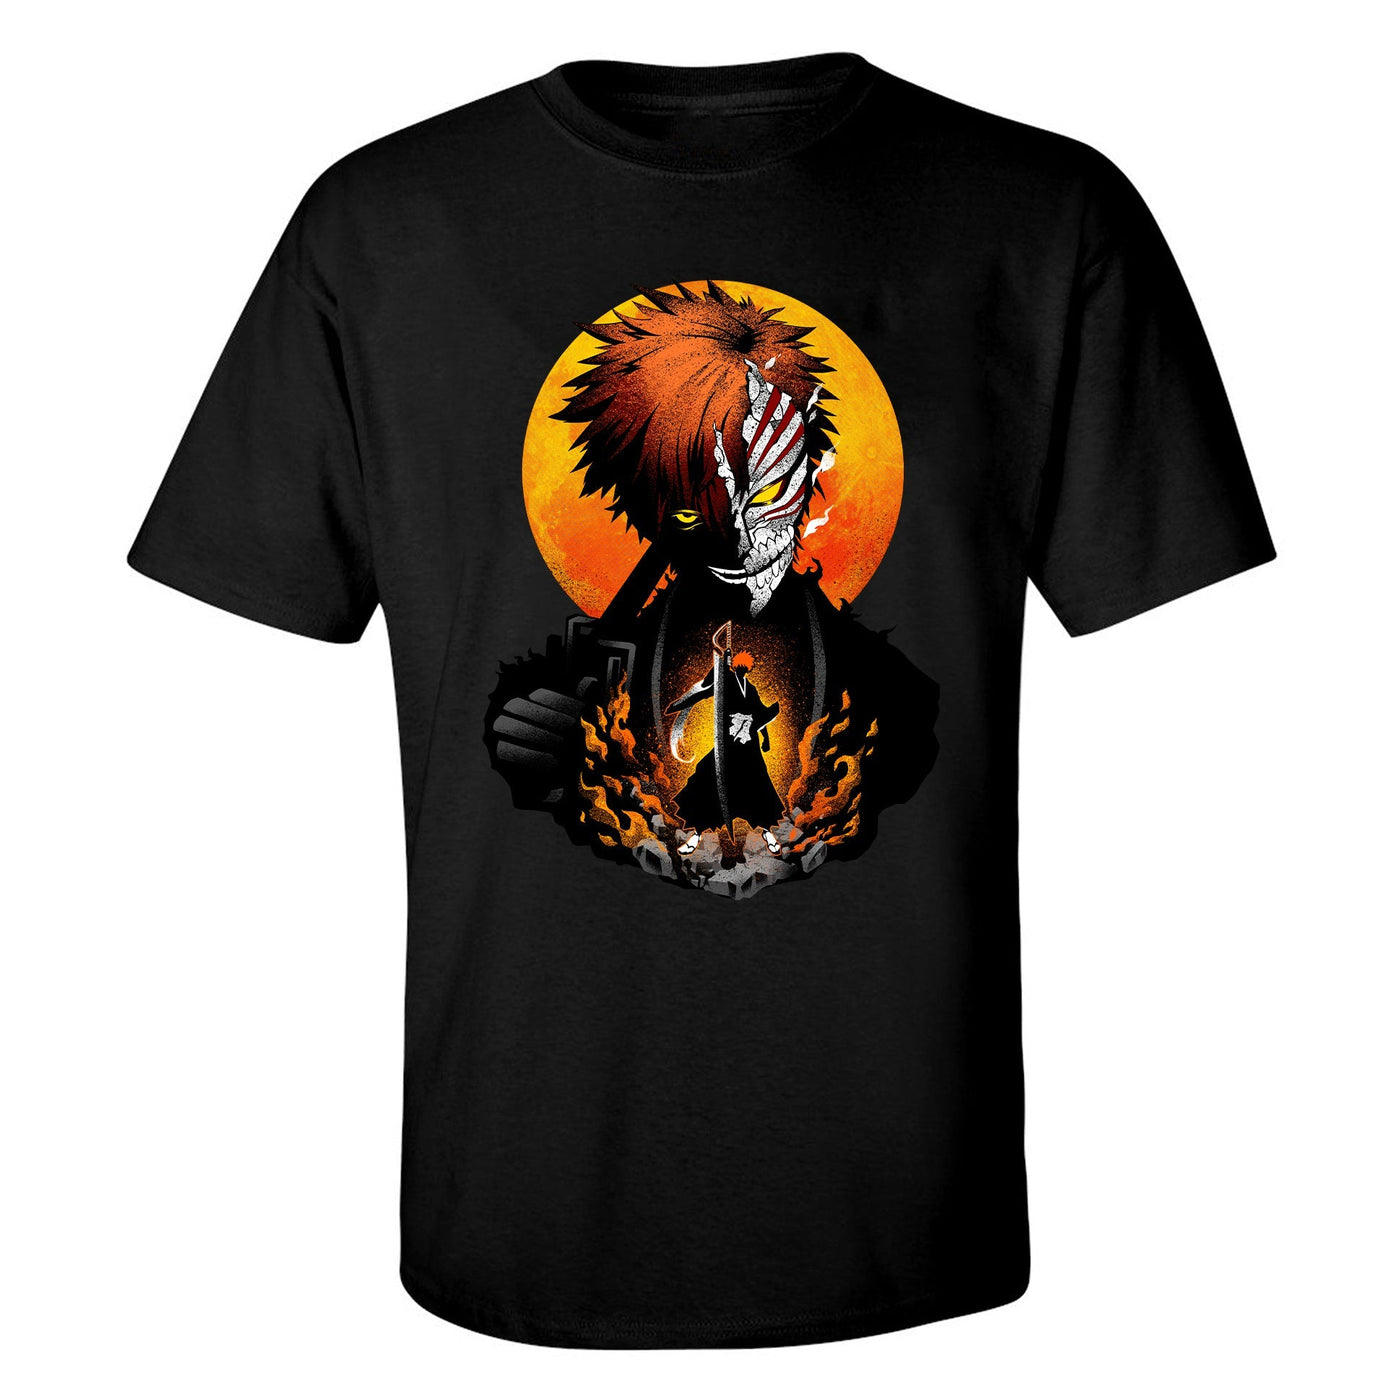 "Hollow Mask Ichigo" T-Shirt by Hypertwentee